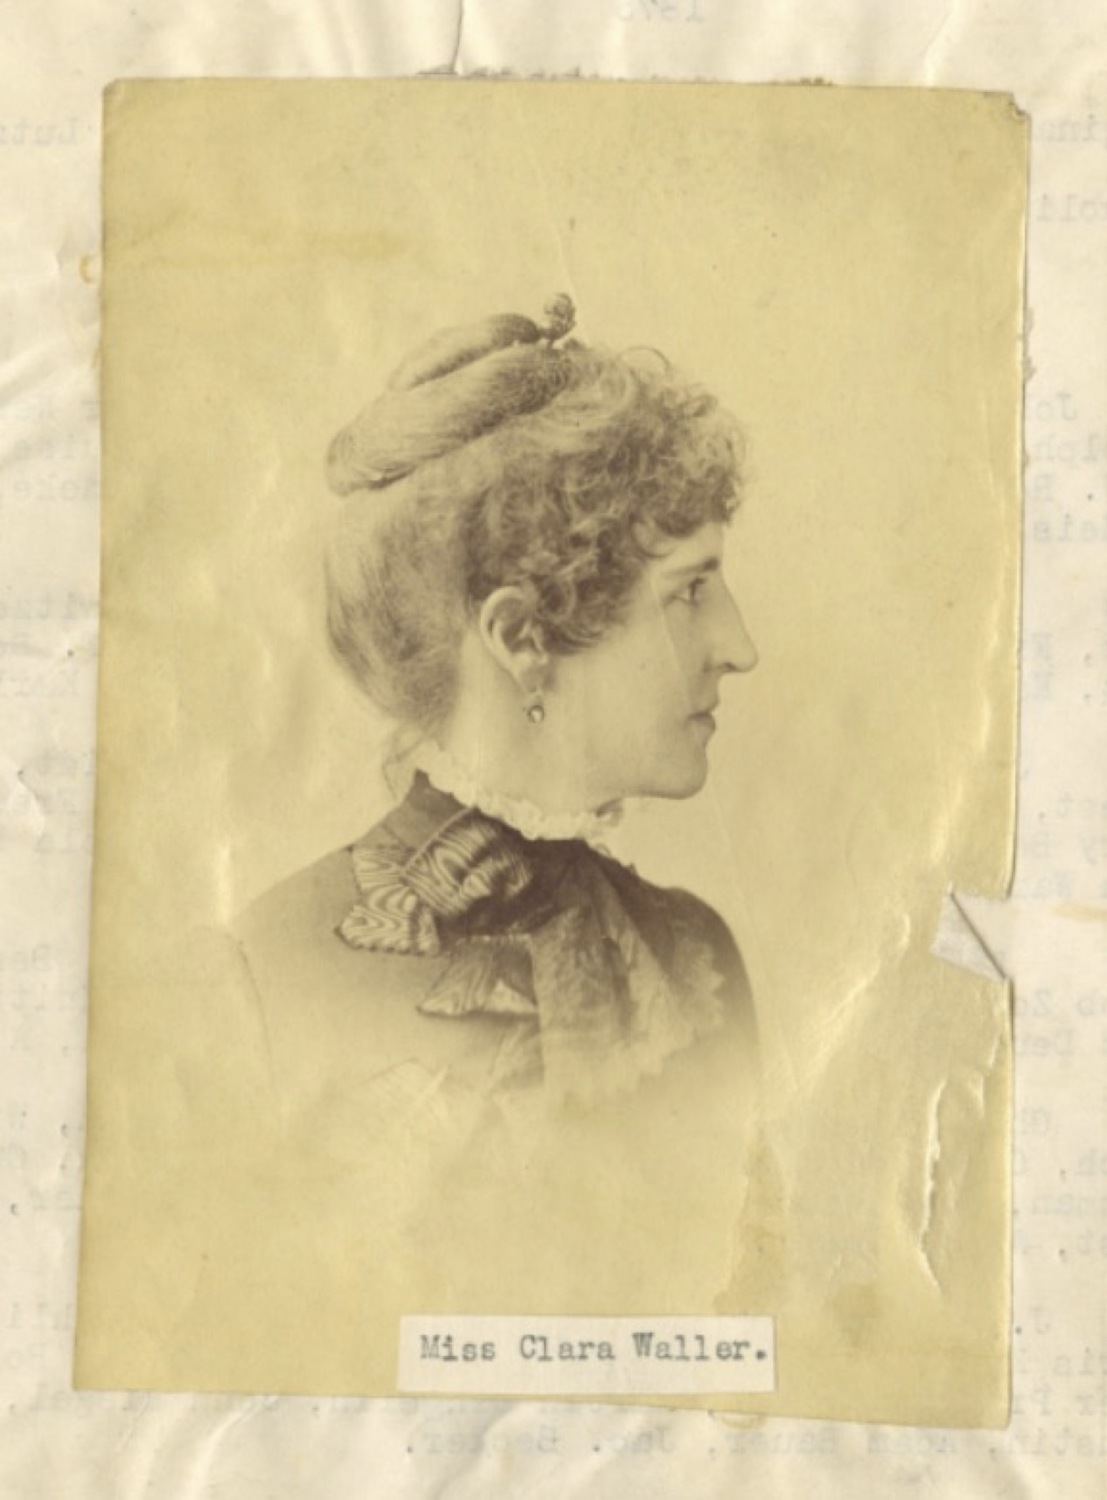 Portrait of Clara Waller